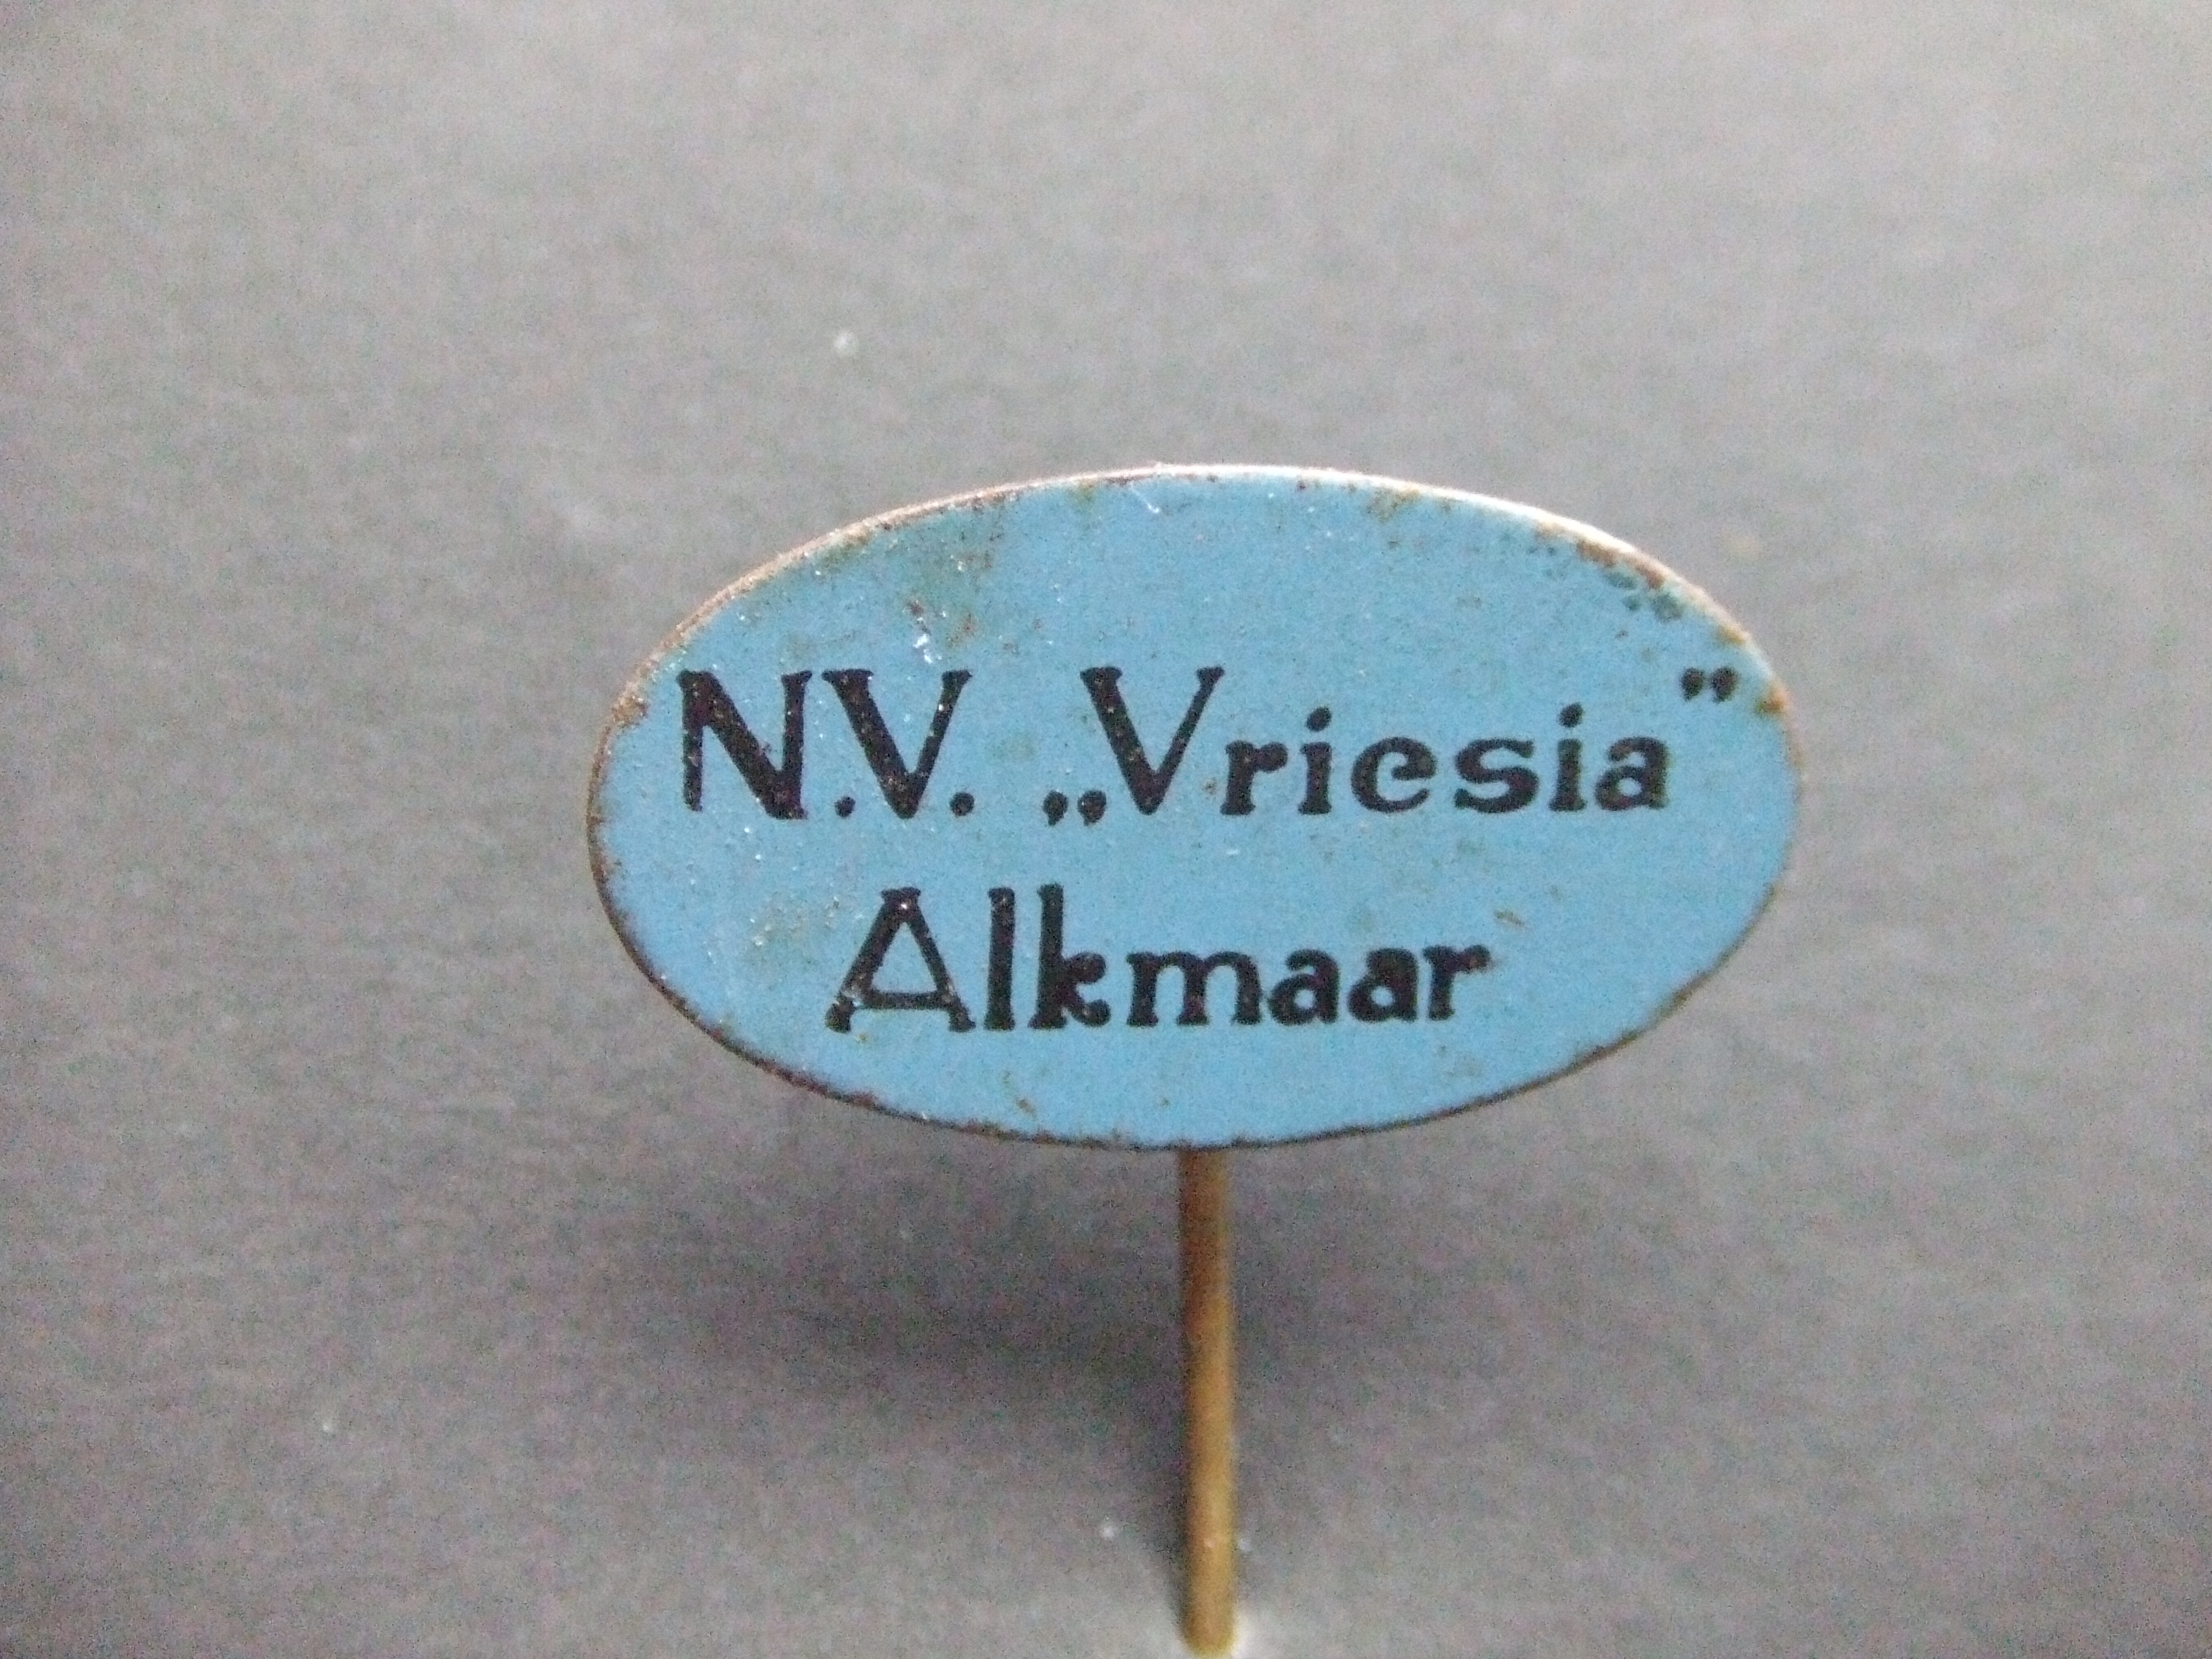 Vriesia groothandel in cosmetische producten Alkmaar .logo